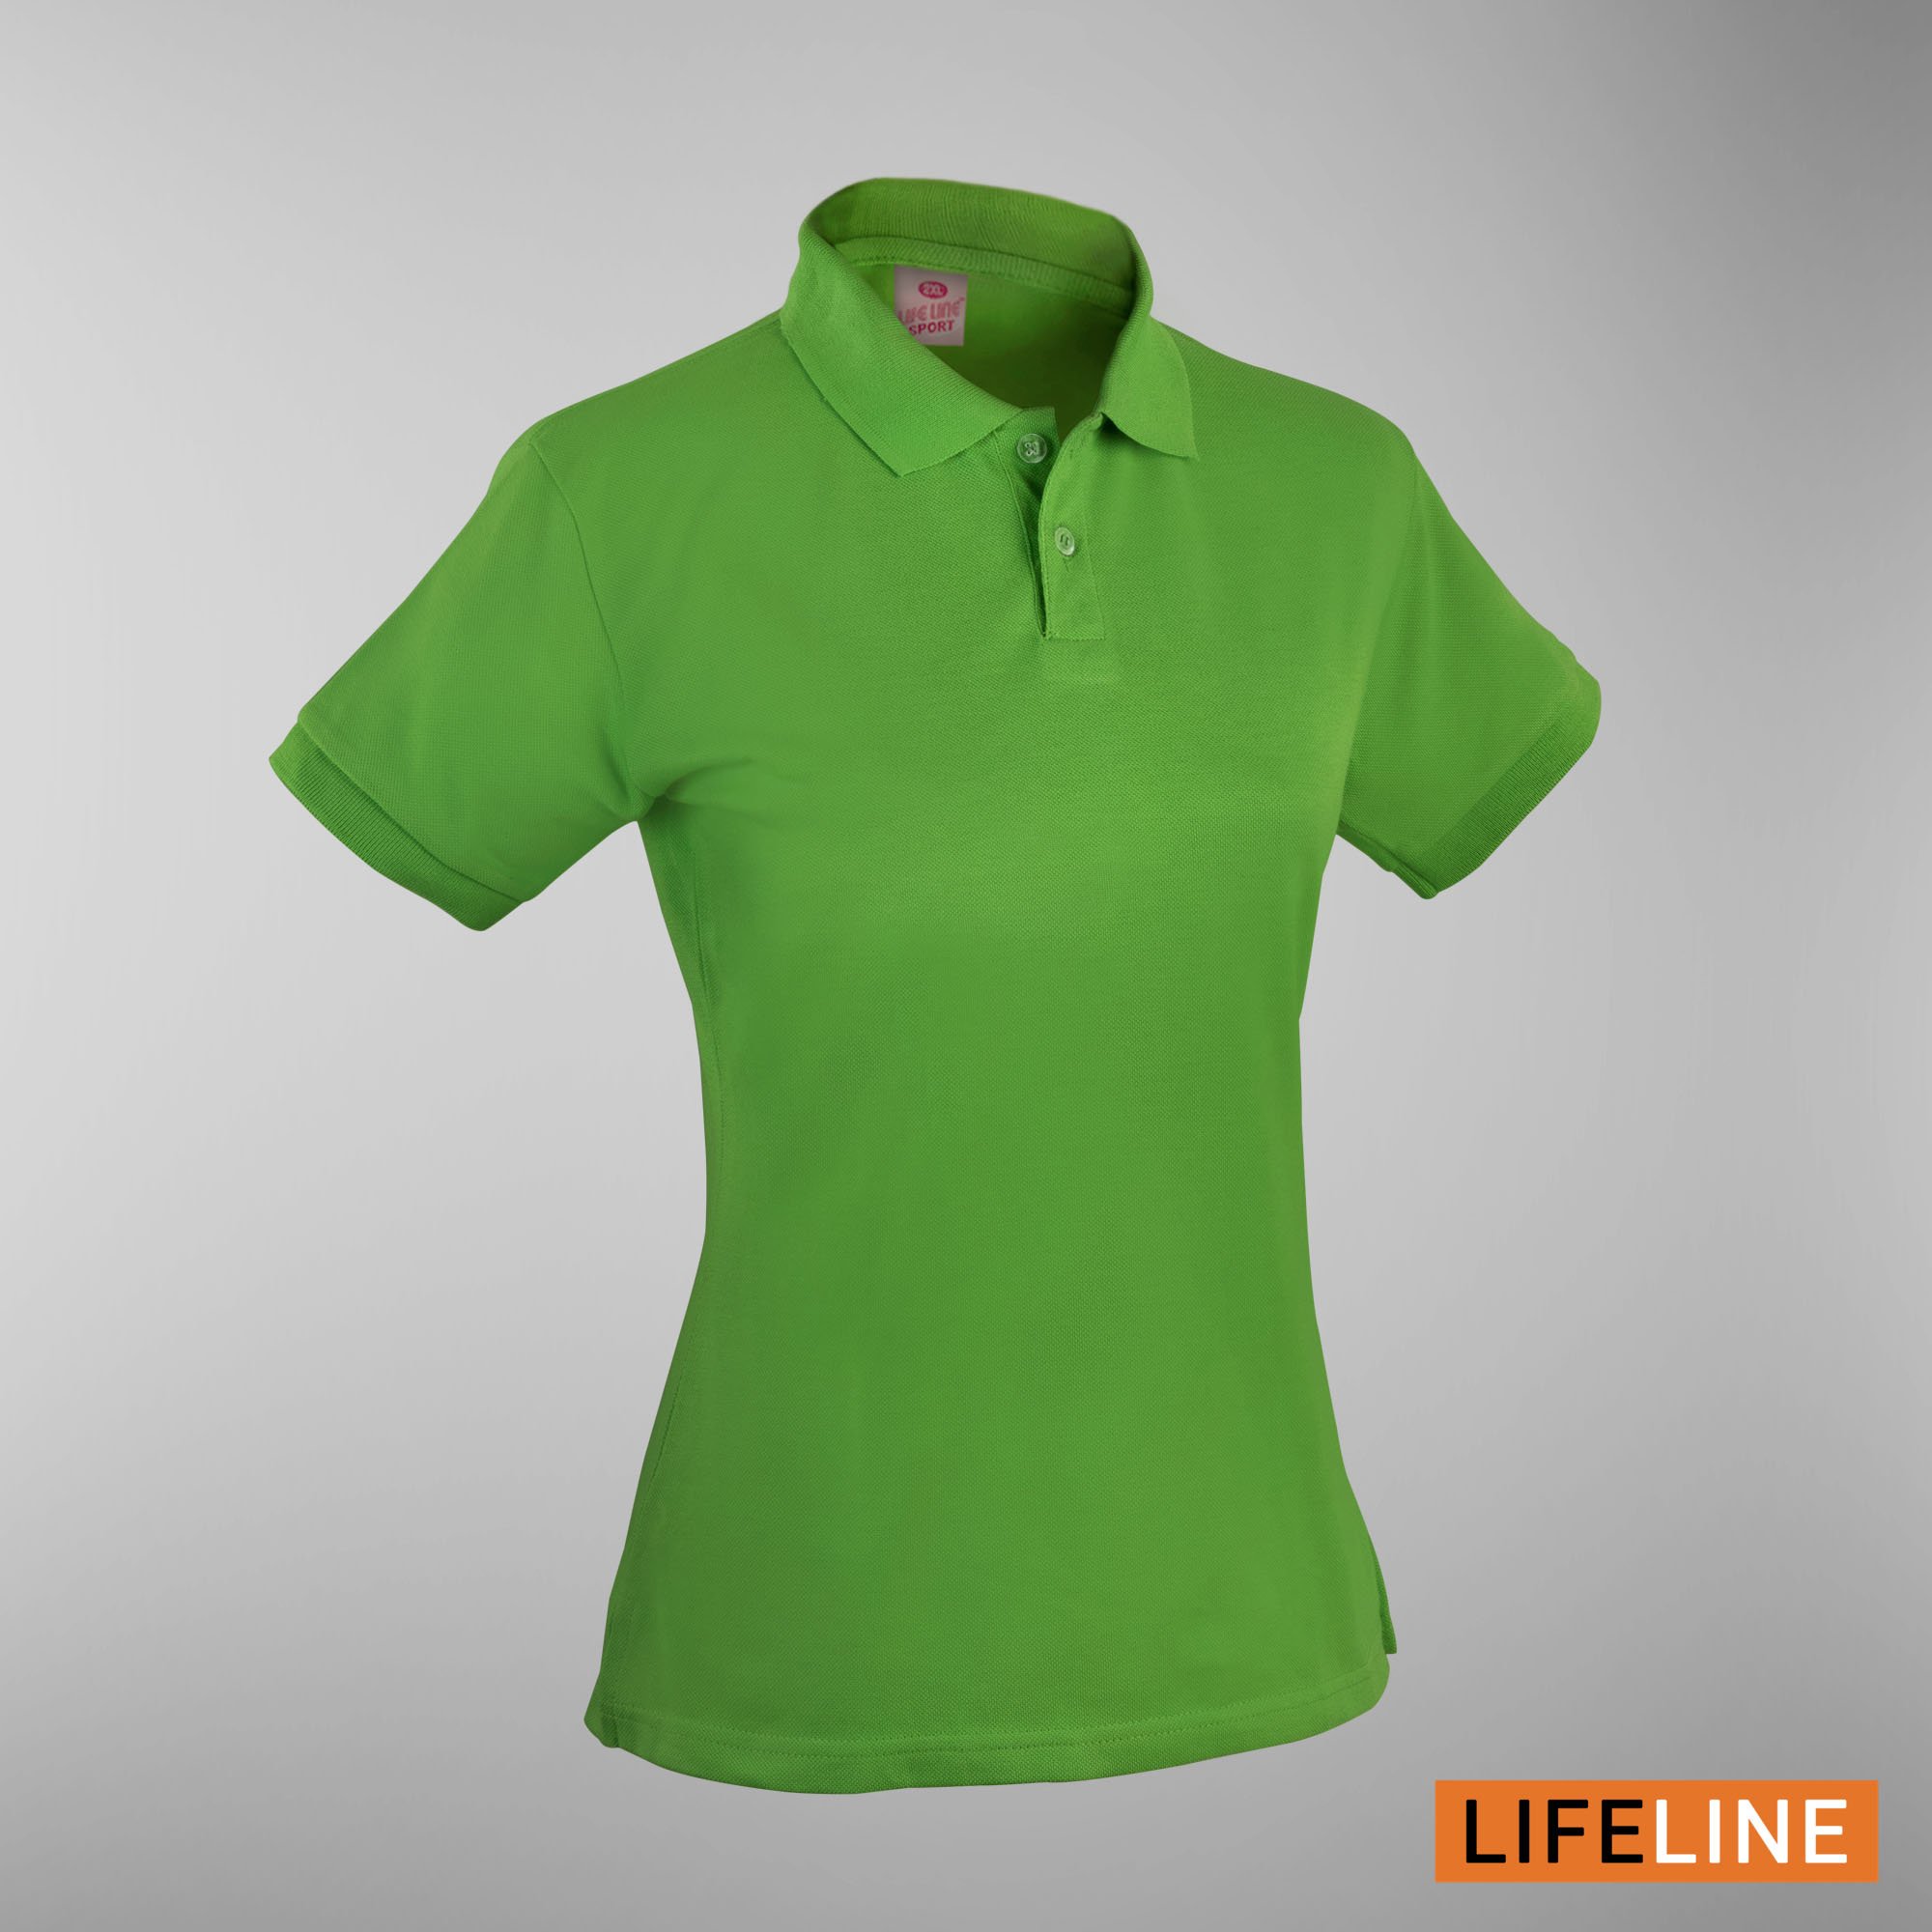 Lifeline Ladies’ Poloshirt (Neon Green) (Petite Sizes)